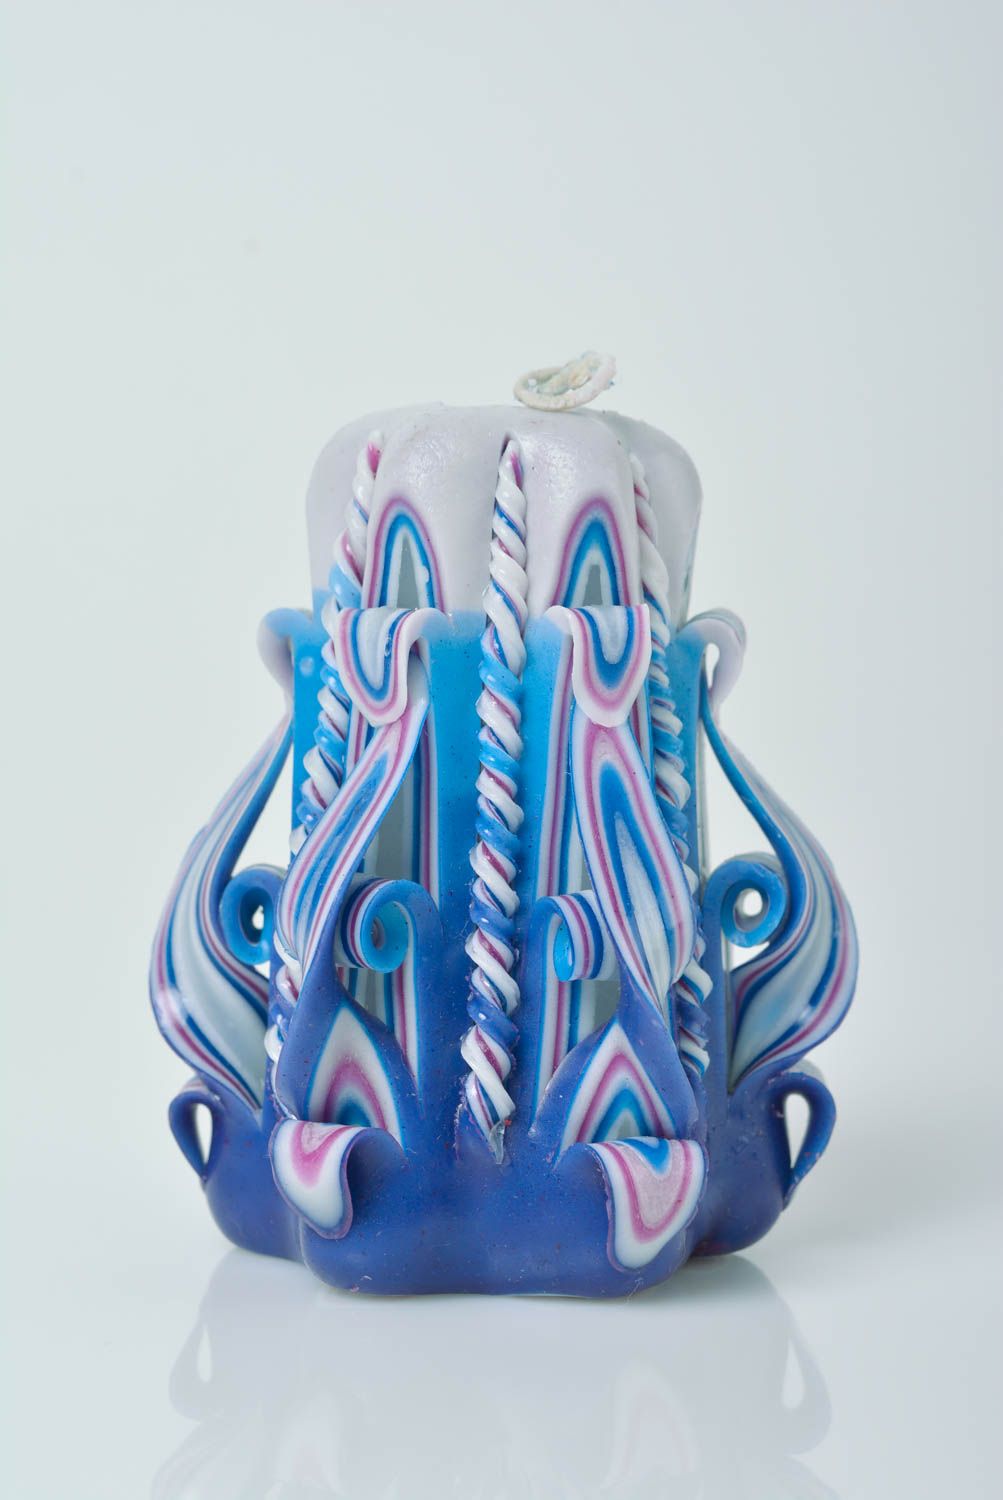 Синяя парафиновая свеча вручную вырезанная ажурная оригинальная для декора фото 1